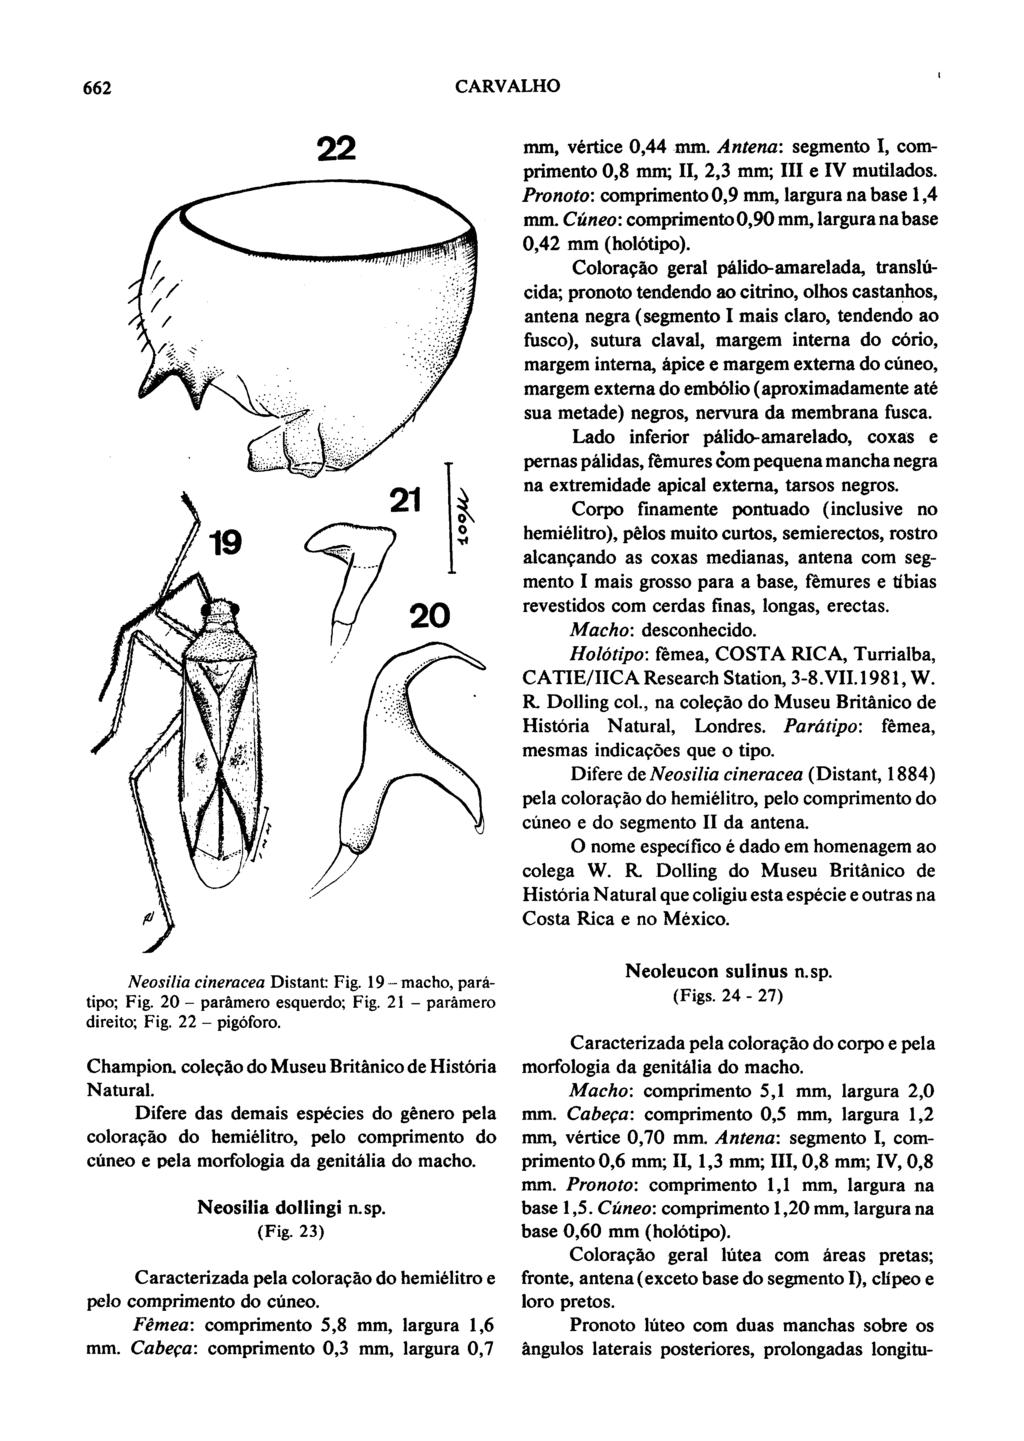 662 22 CARVALHO tipo; Fig. 20 - paramero esquerdo; Fig. 21 - paramero direito; Fig. 22 - pigoforo. mm, vertice 0,44 mm. Antena: segmento I, comprimento 0,8 mm; II, 2,3 mm; III e IV mutilados.